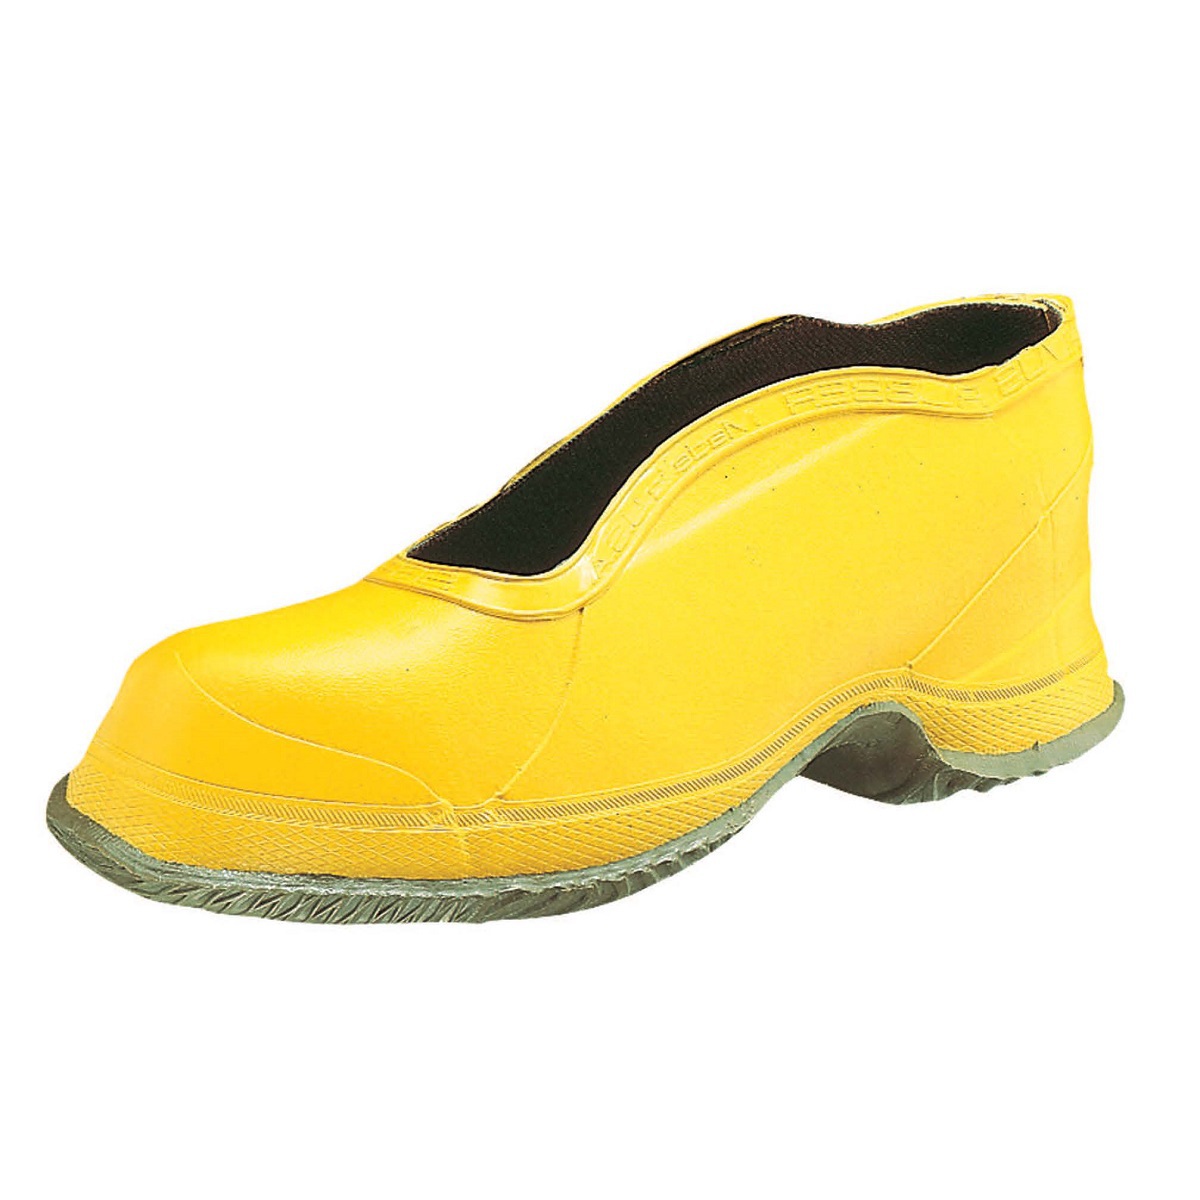 Honeywell Size 16 Salisbury Yellow Rubber Deep Heel Storm Overshoes With Fabric Lining